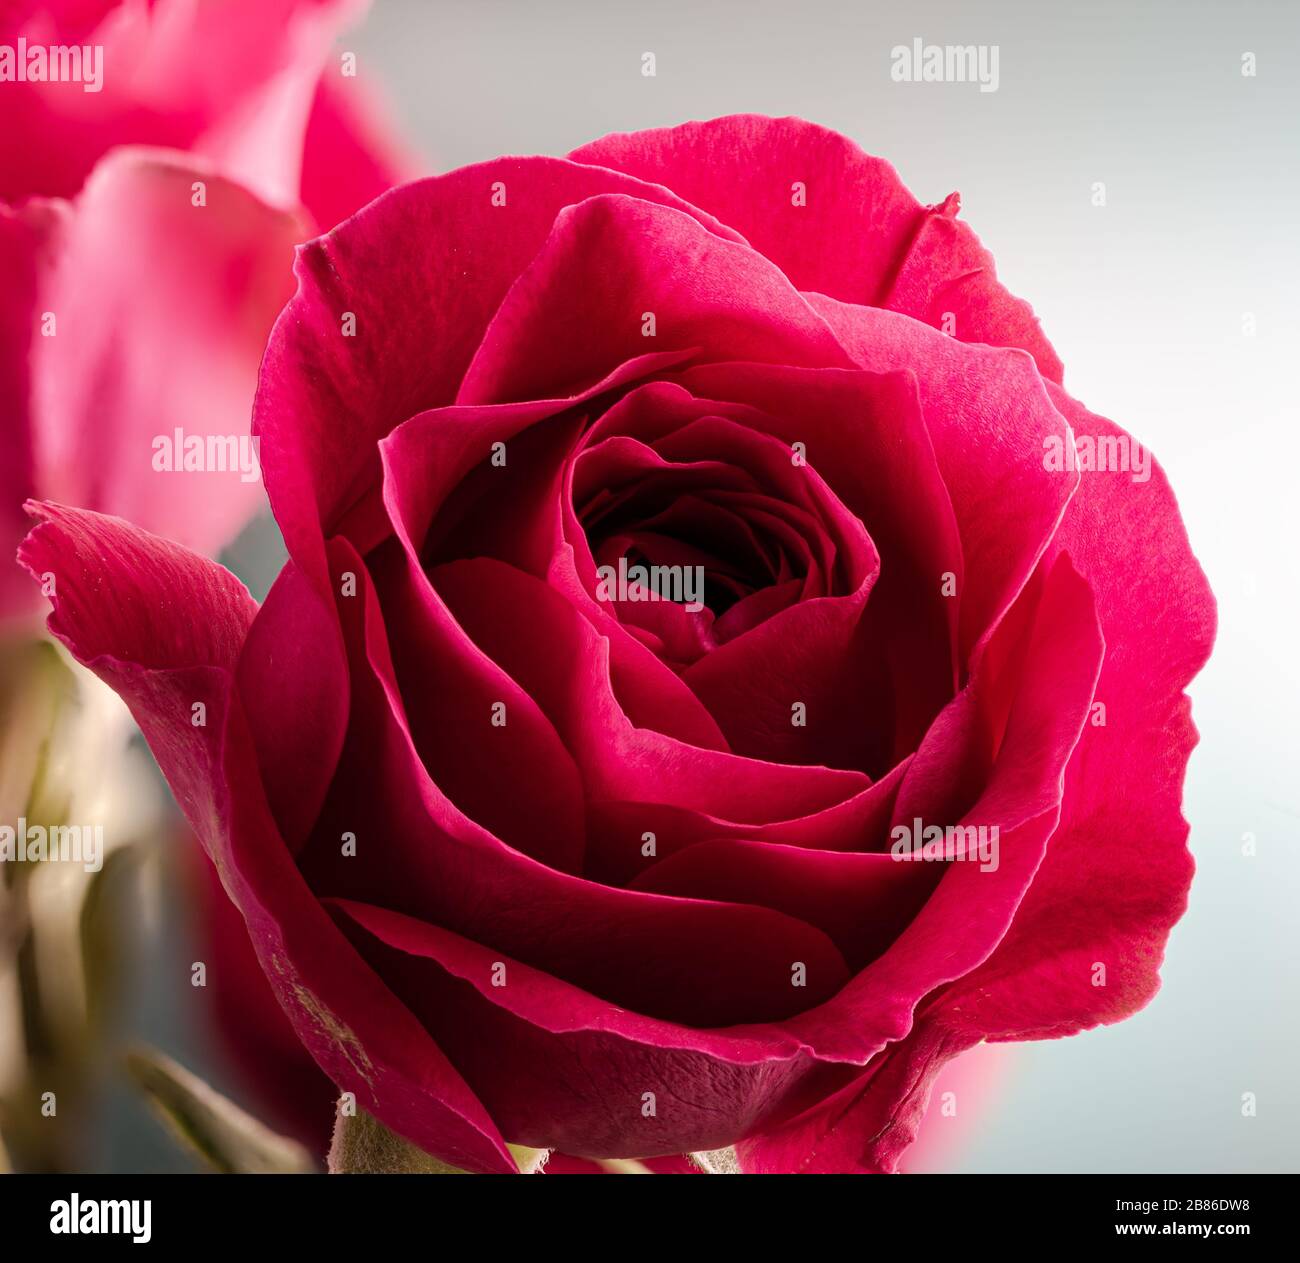 Gros plan d'une belle rose rouge sur fond clair Banque D'Images